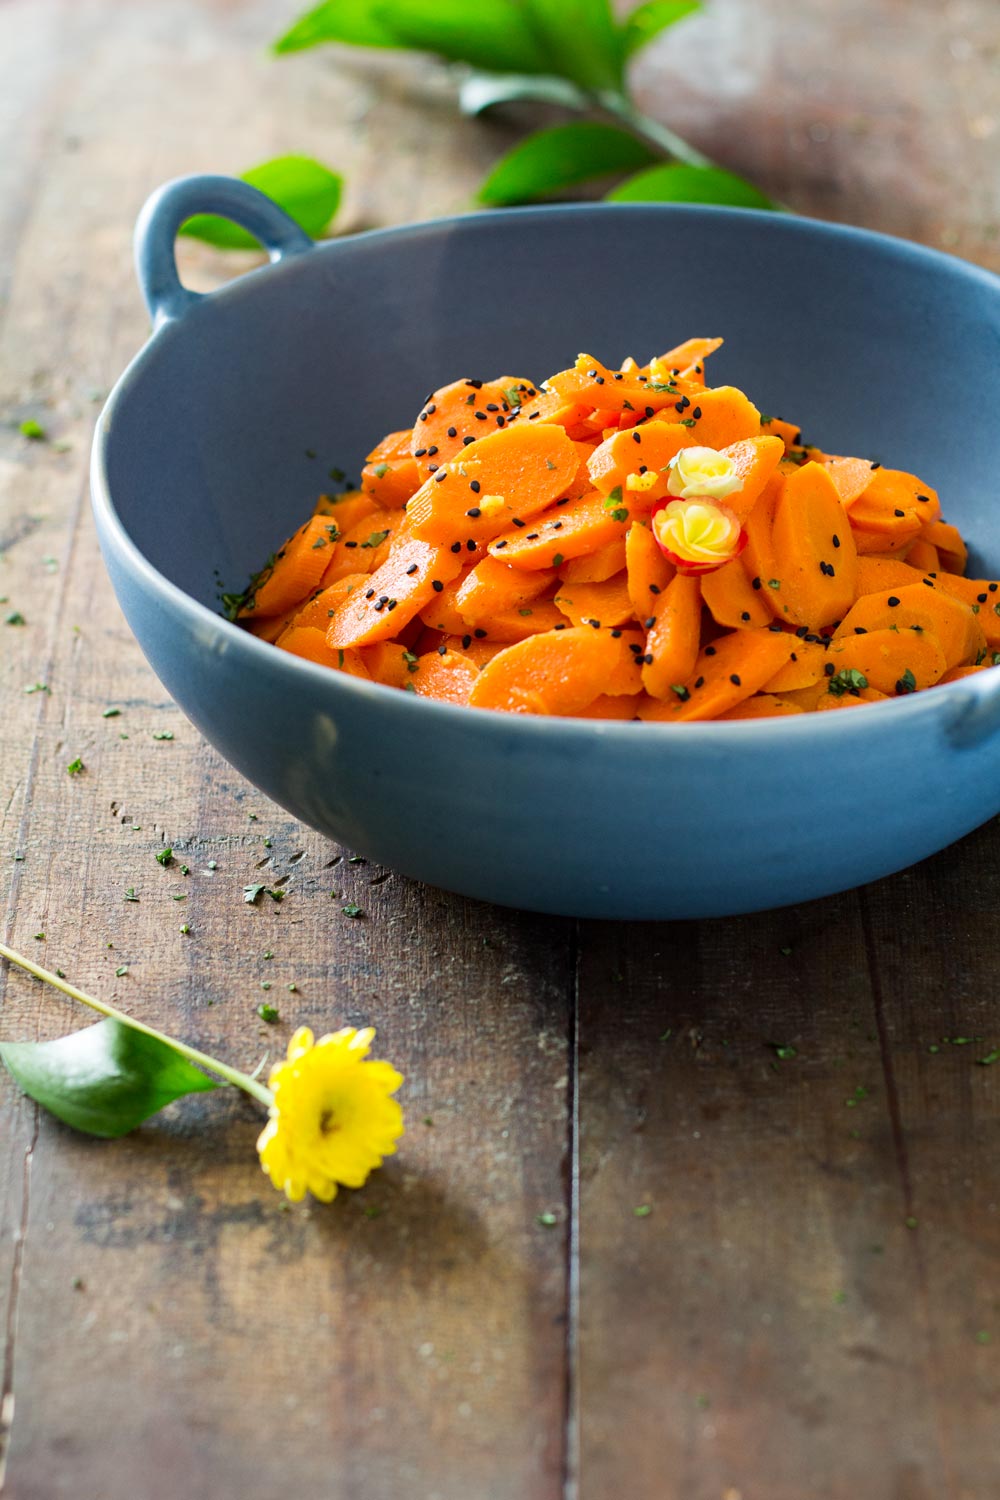 En tant qu'aliment hypocalorique, les carottes sont toujours un bon ajout à un régime amincissant efficace.